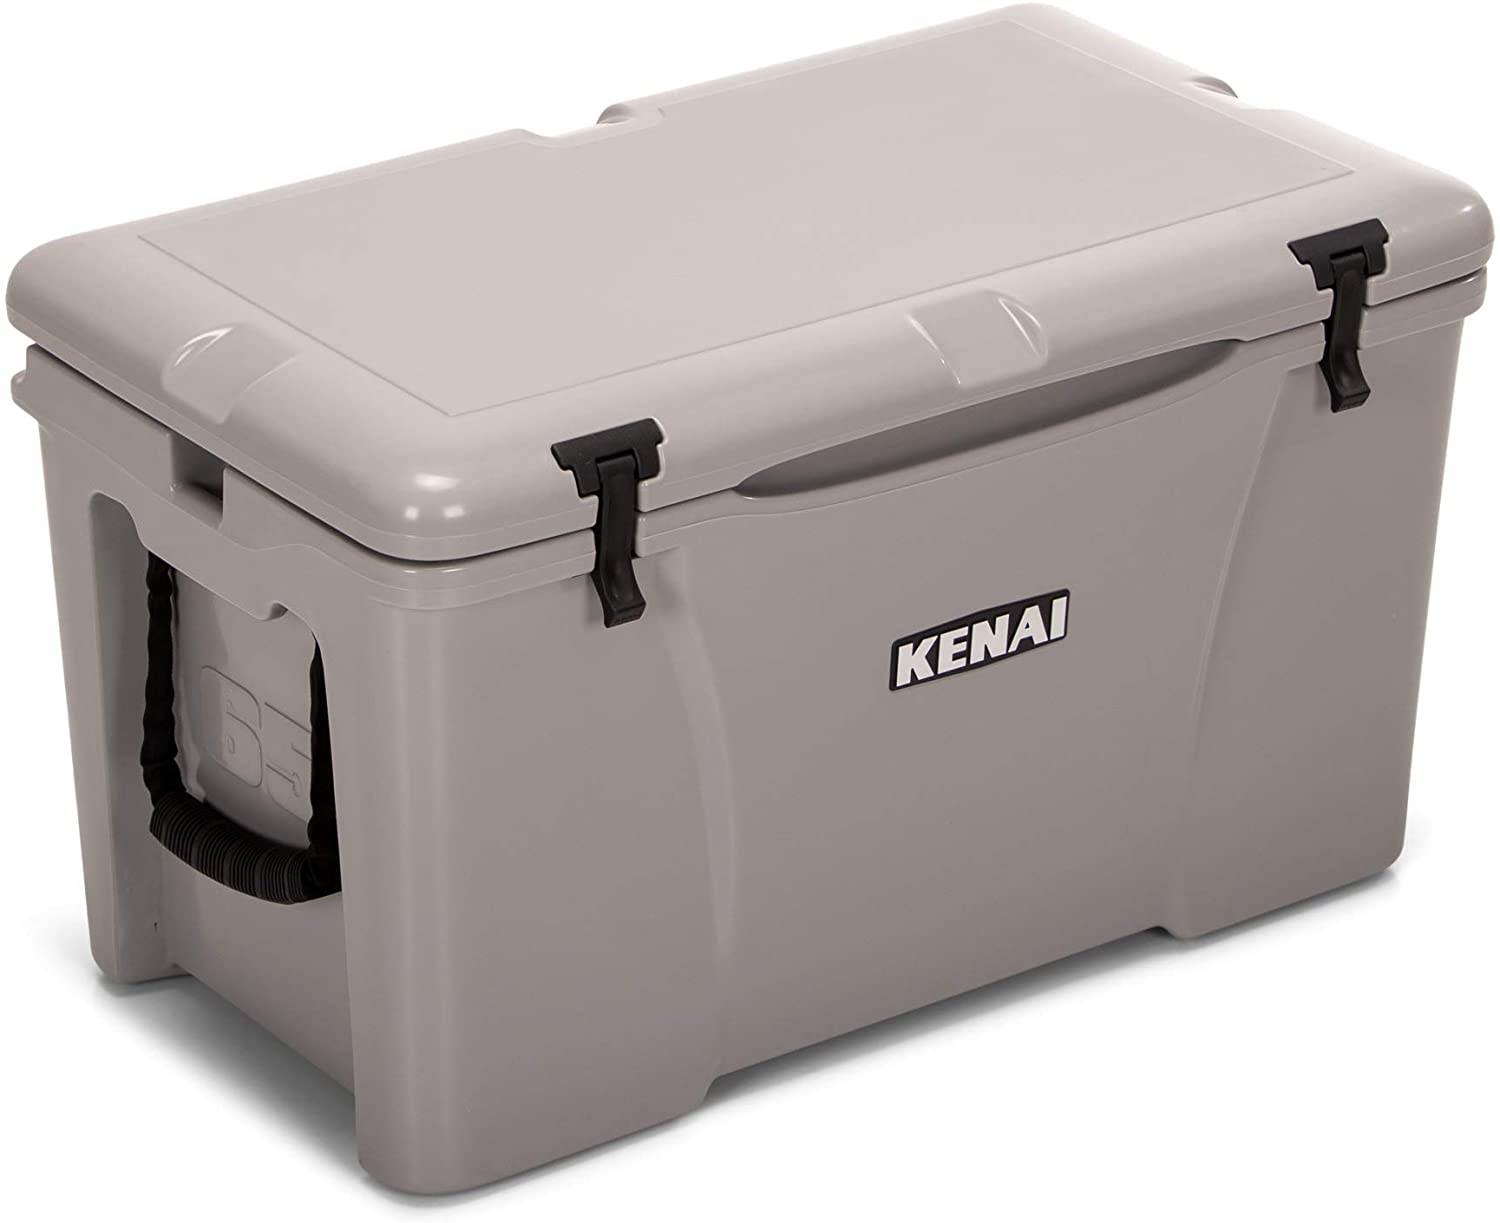 KENAI 65 Cooler, Gray, 65 QT, Made in USA